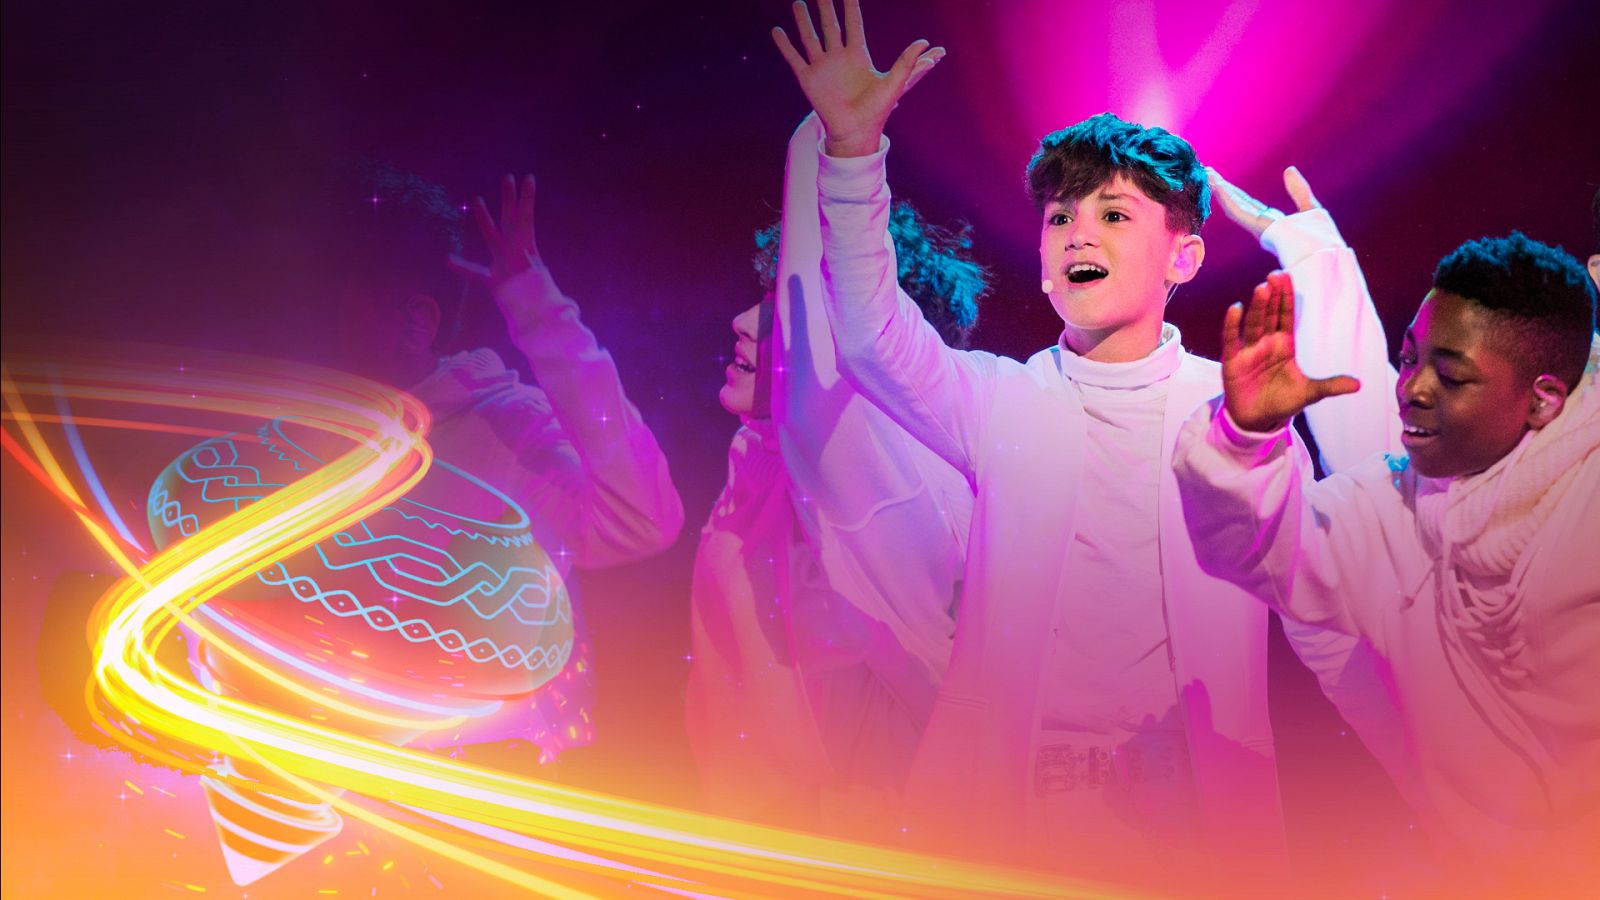 Eurovisión Junior 2022 - España: Carlos Higes canta "Señorita" - Ver ahora